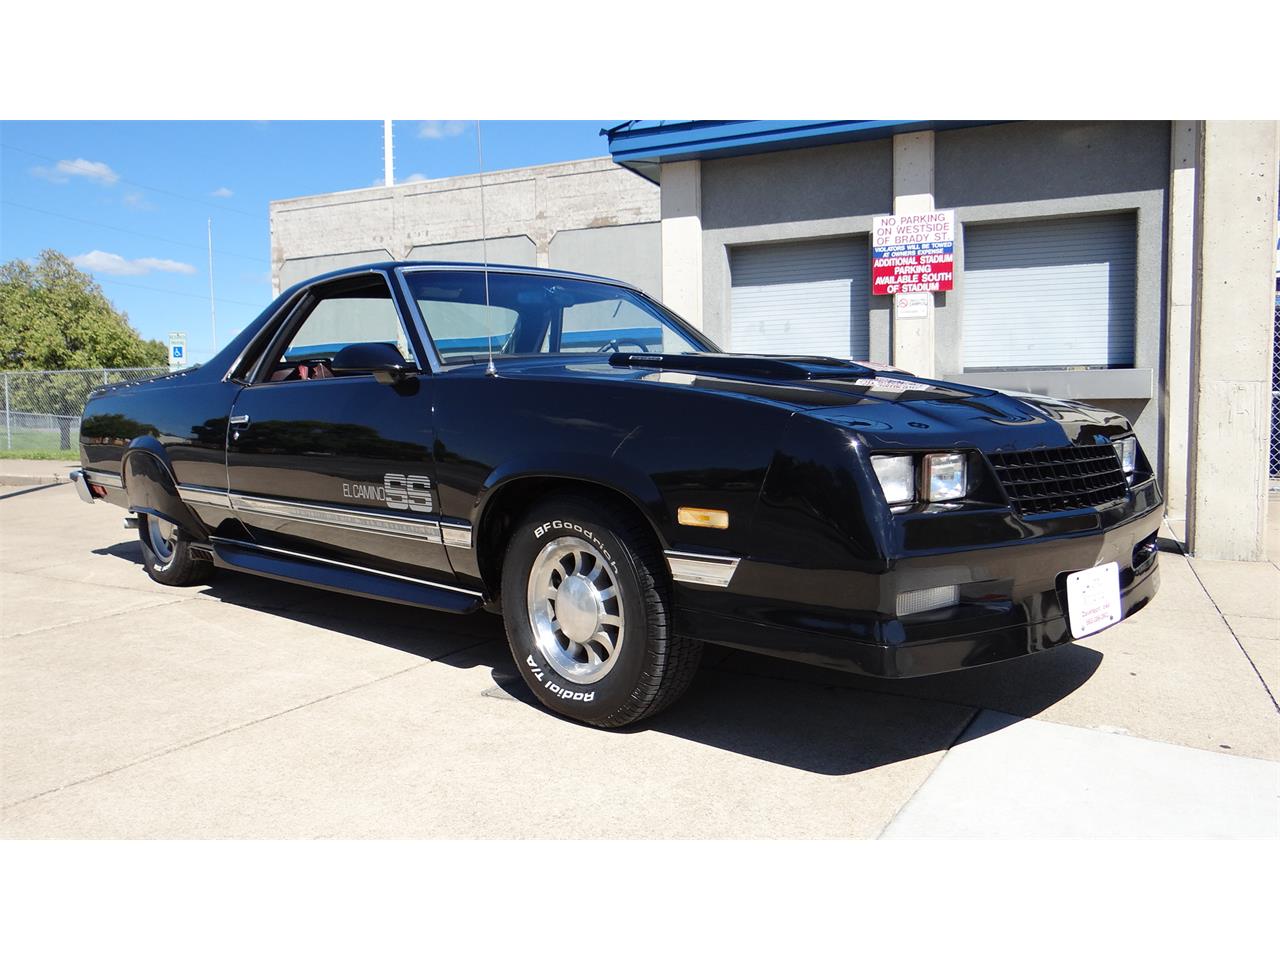 1986 Chevrolet El Camino SS for Sale | ClassicCars.com | CC-896157